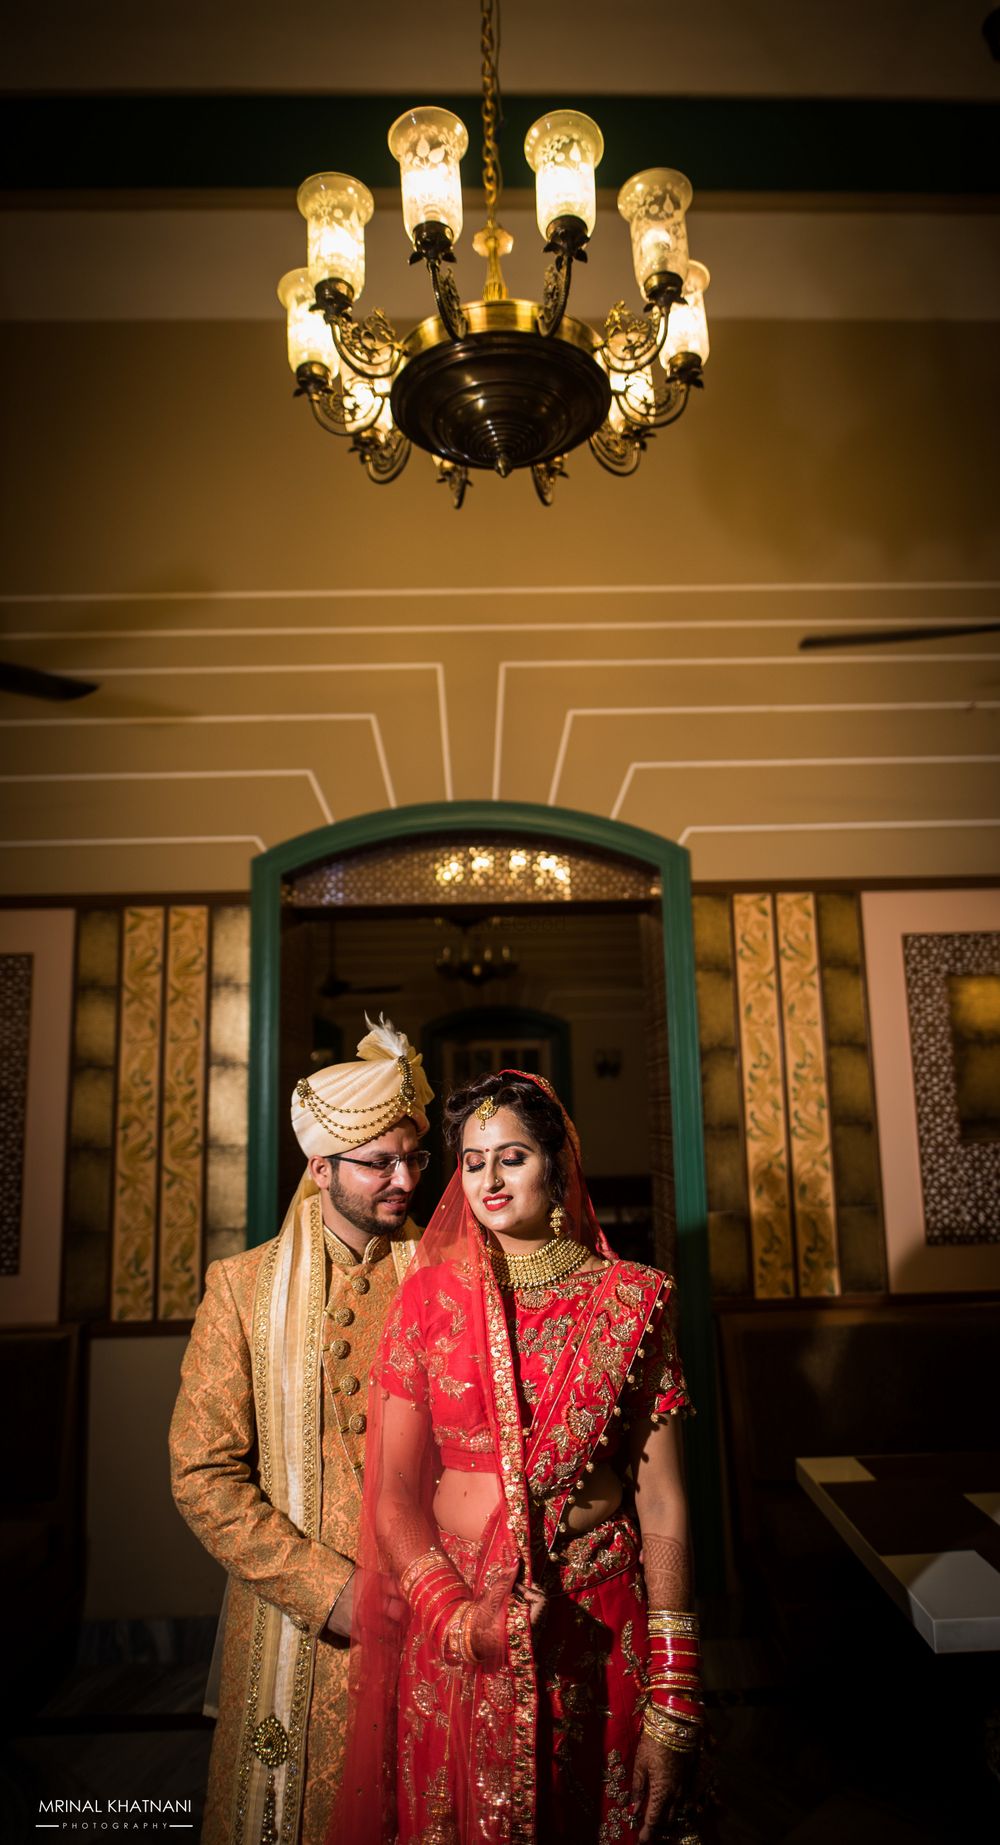 Photo From Raunak & Richa - By Mrinal Khatnani Photos and Films